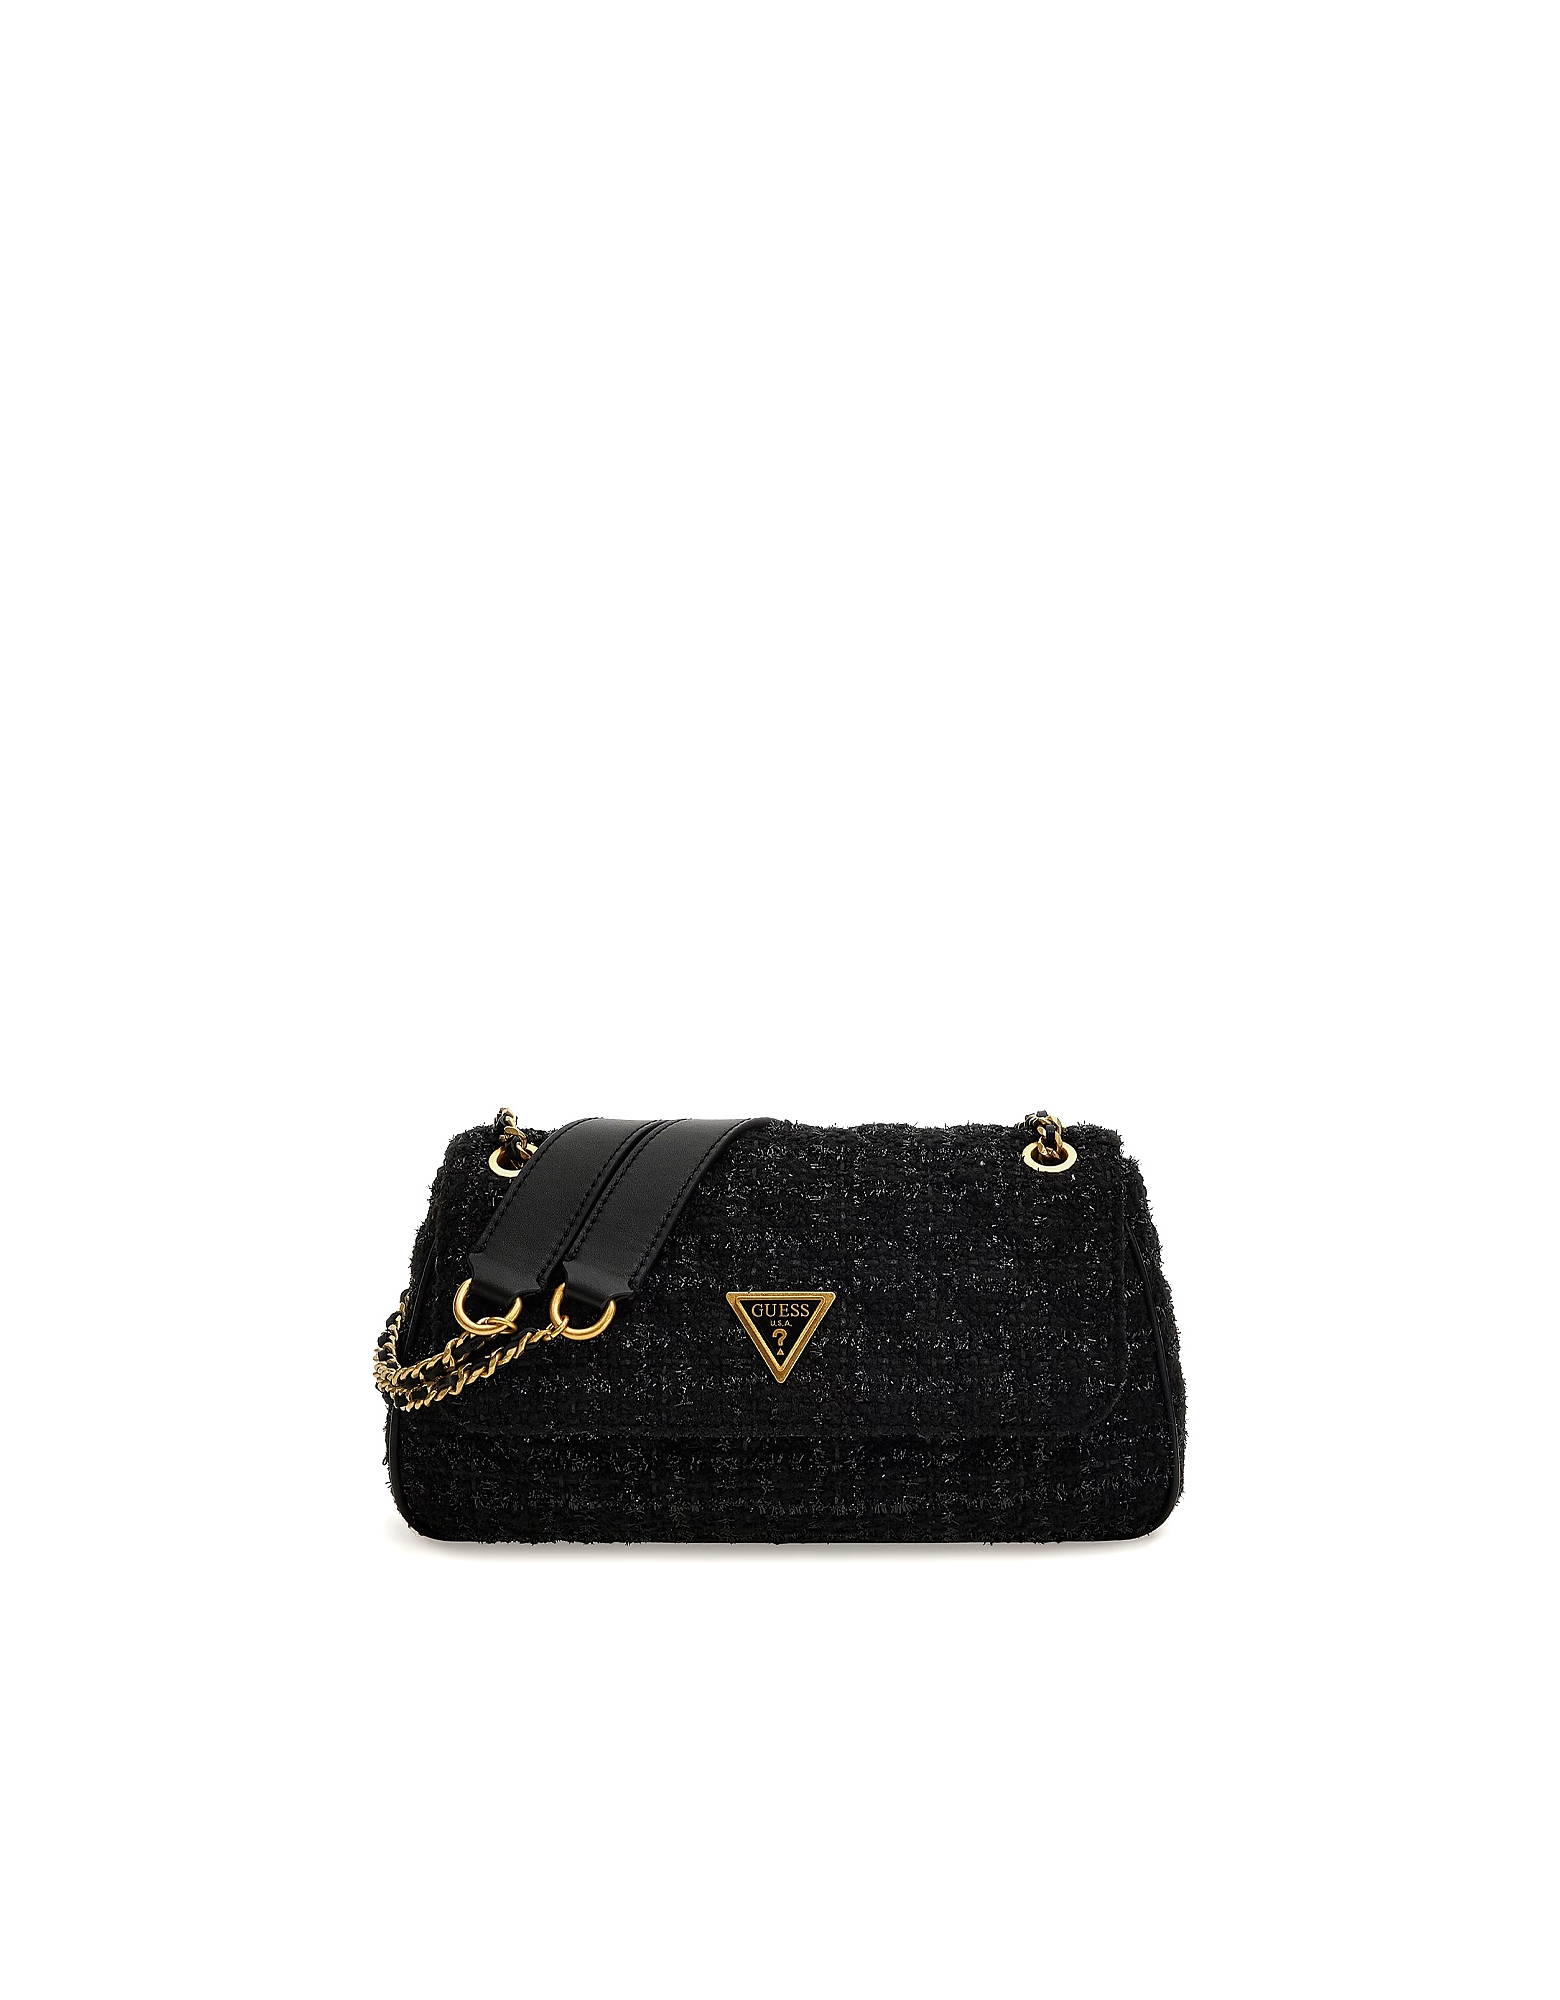 Guess Designer Handbags Women's Bag In Black